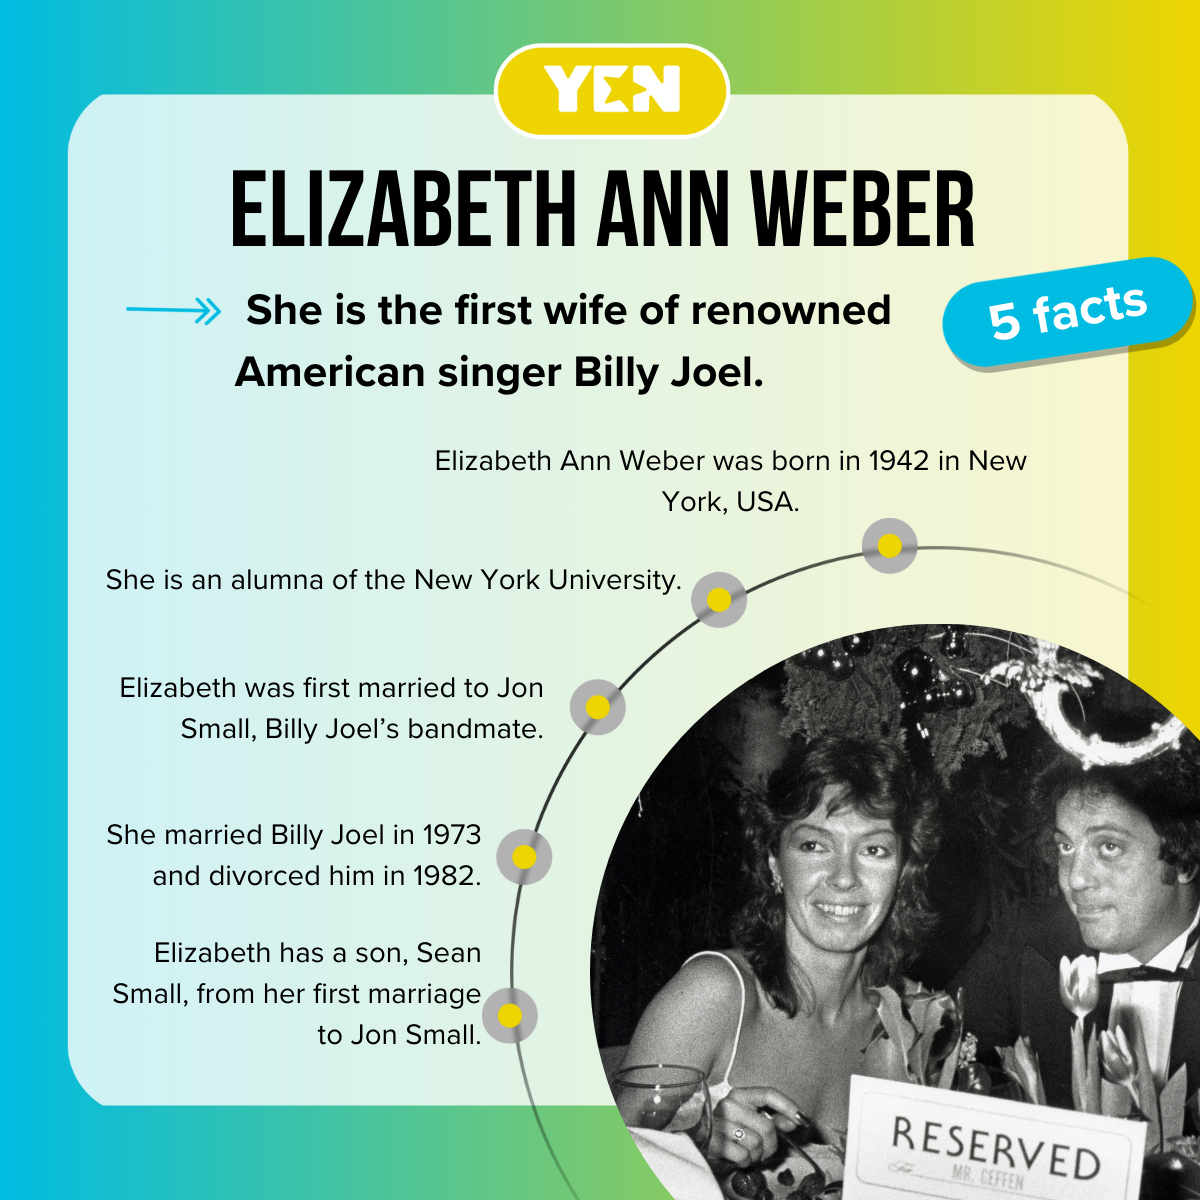 Five facts about Elizabeth Ann Weber